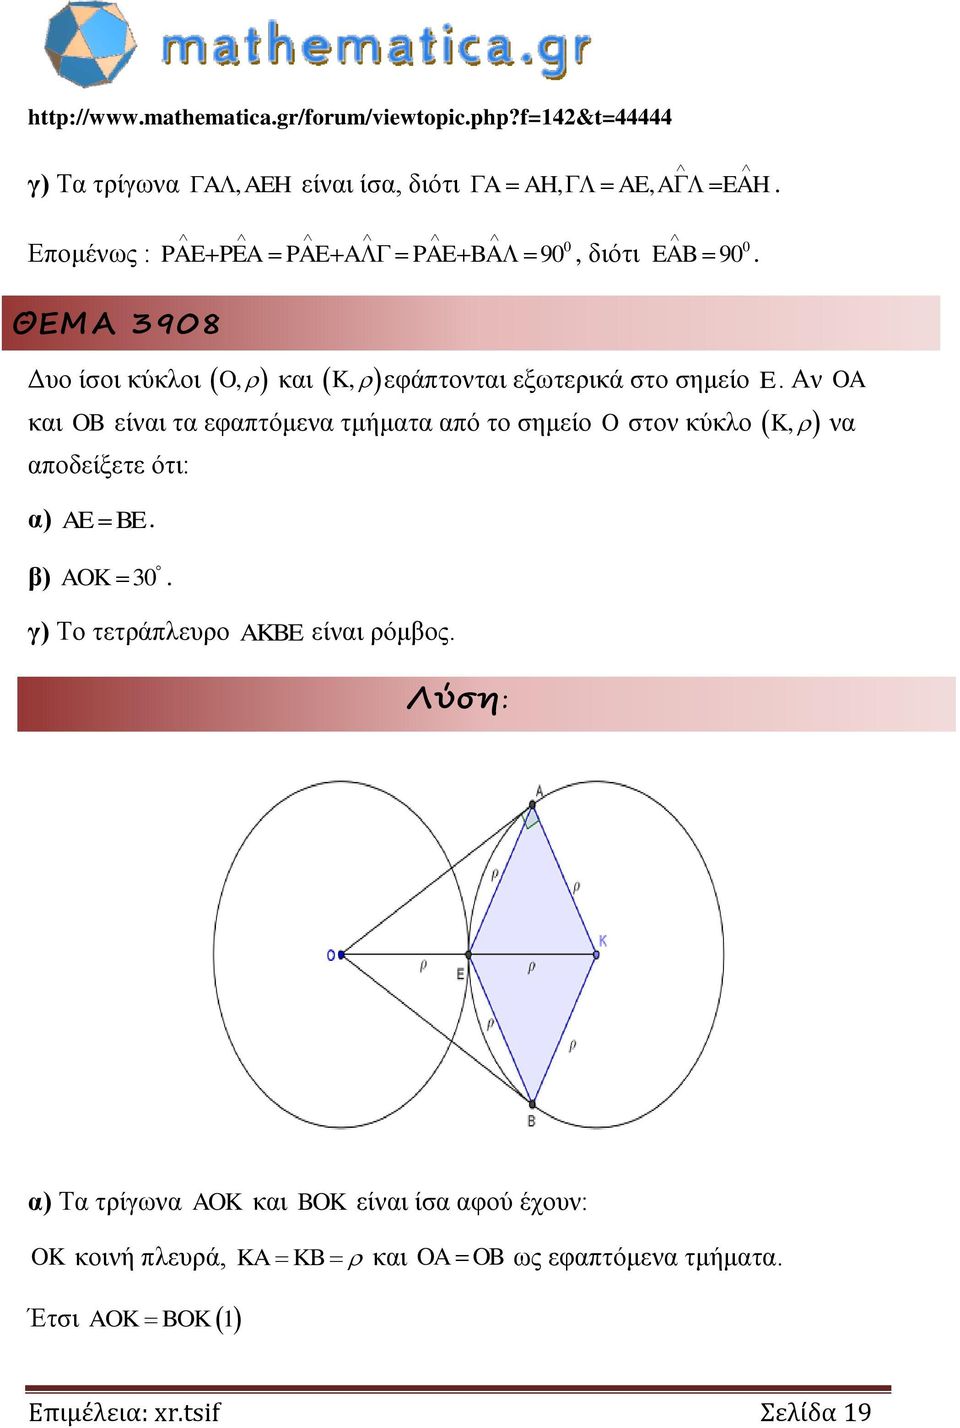 Αν OA και OB είναι τα εφαπτόμενα τμήματα από το σημείο O στον κύκλο K, να αποδείξετε ότι: α) AE BE. β) AOK 3.